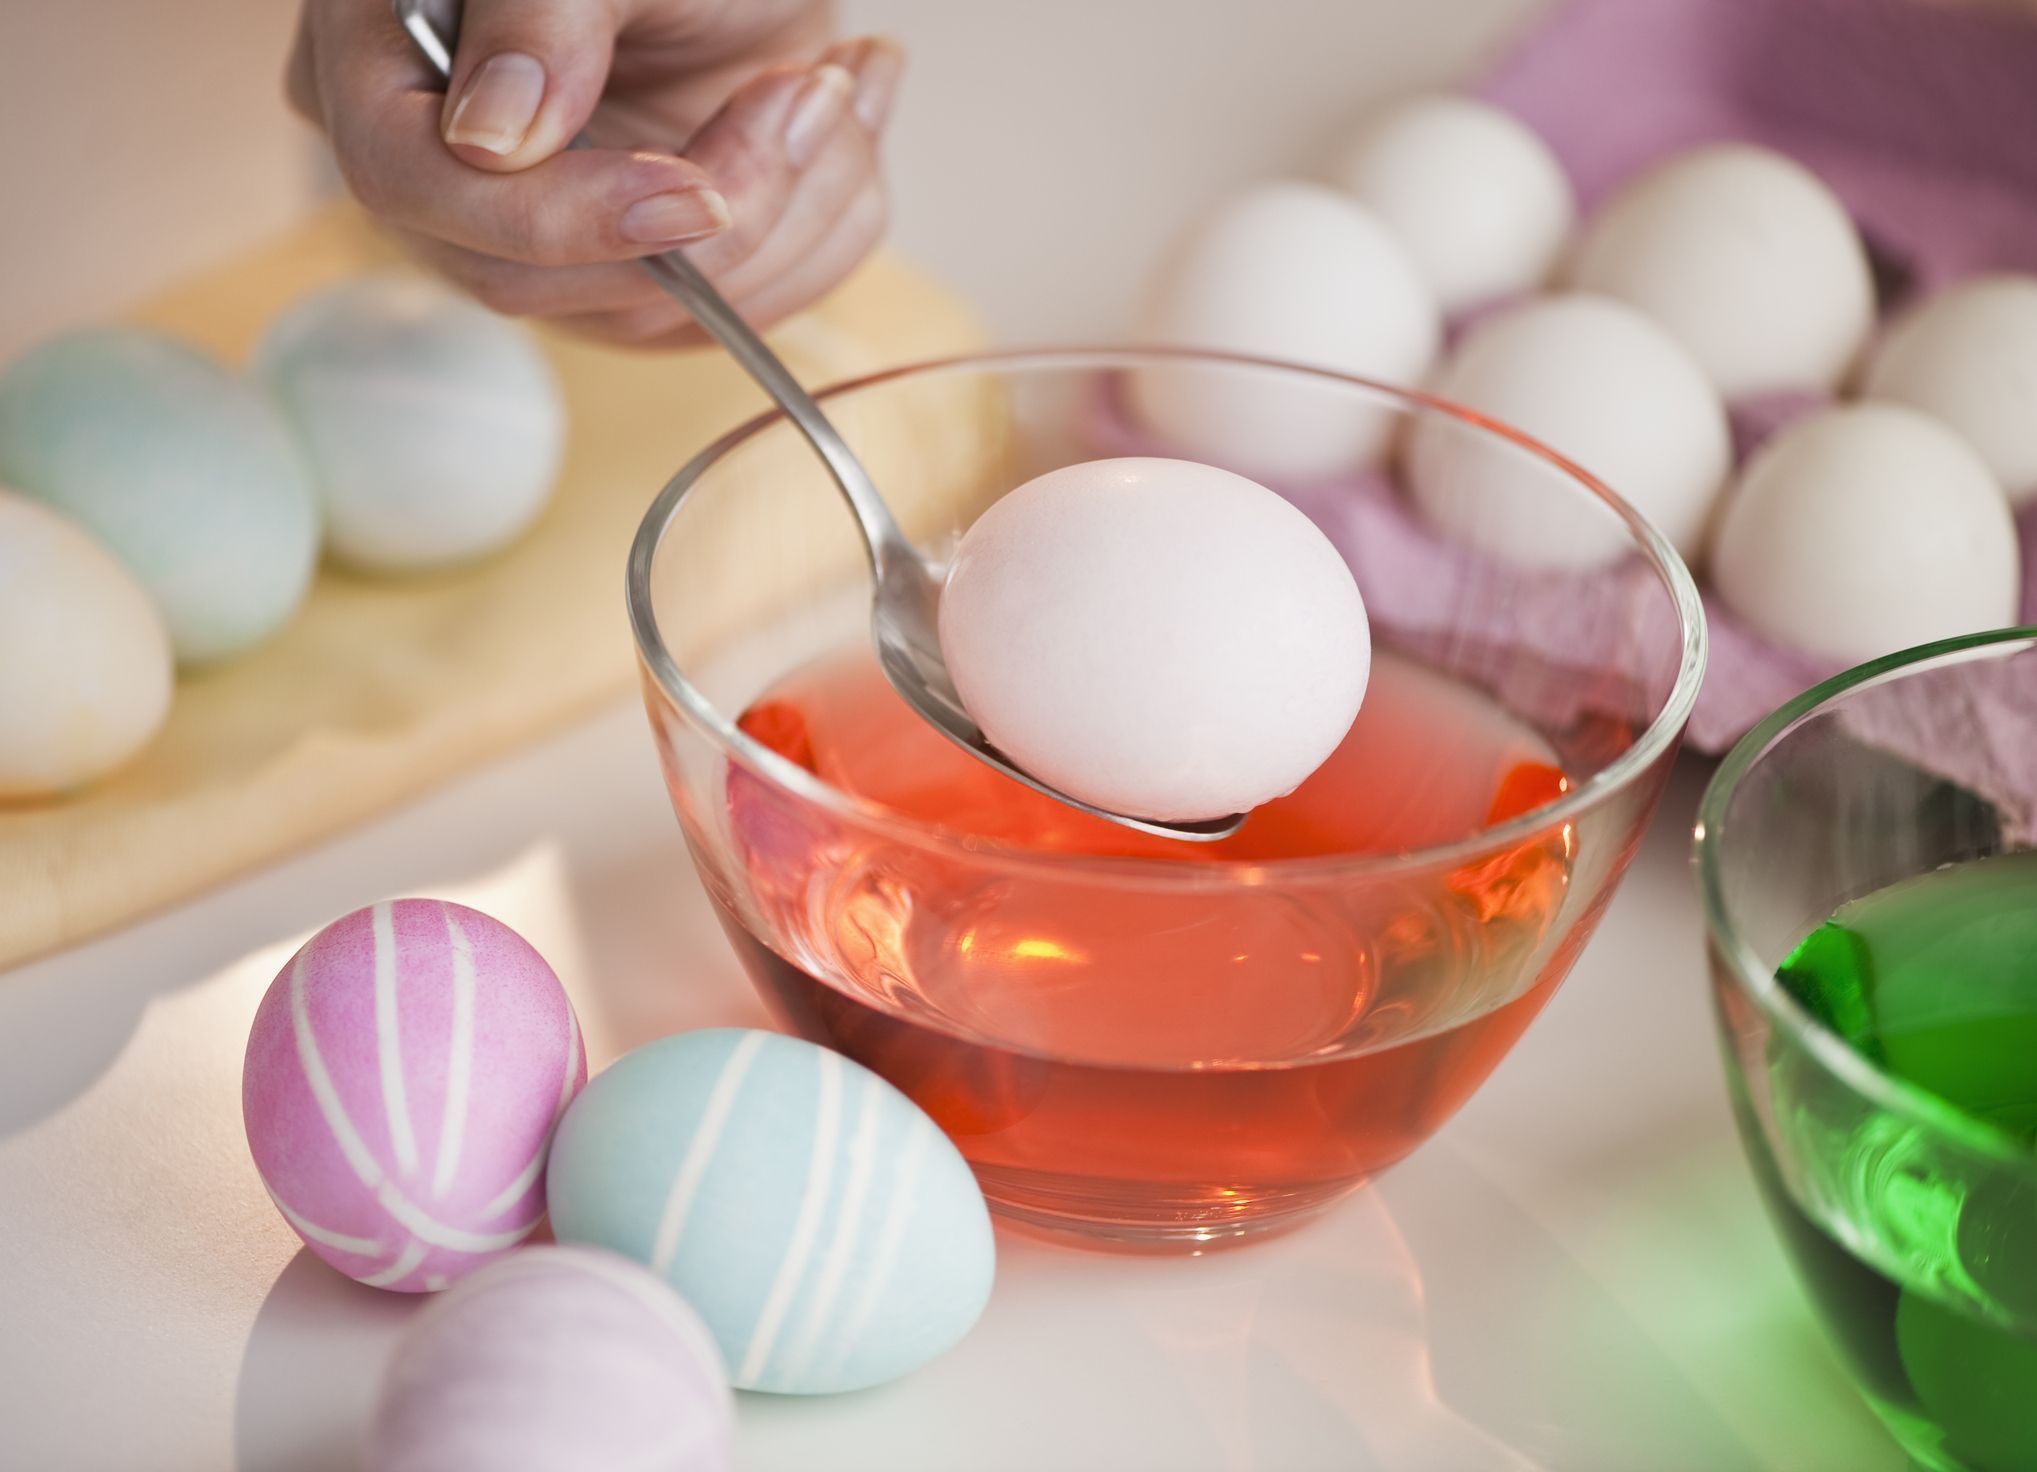 15 Best Easter Egg Dye Kits 2023 - How to Dye Easter Eggs